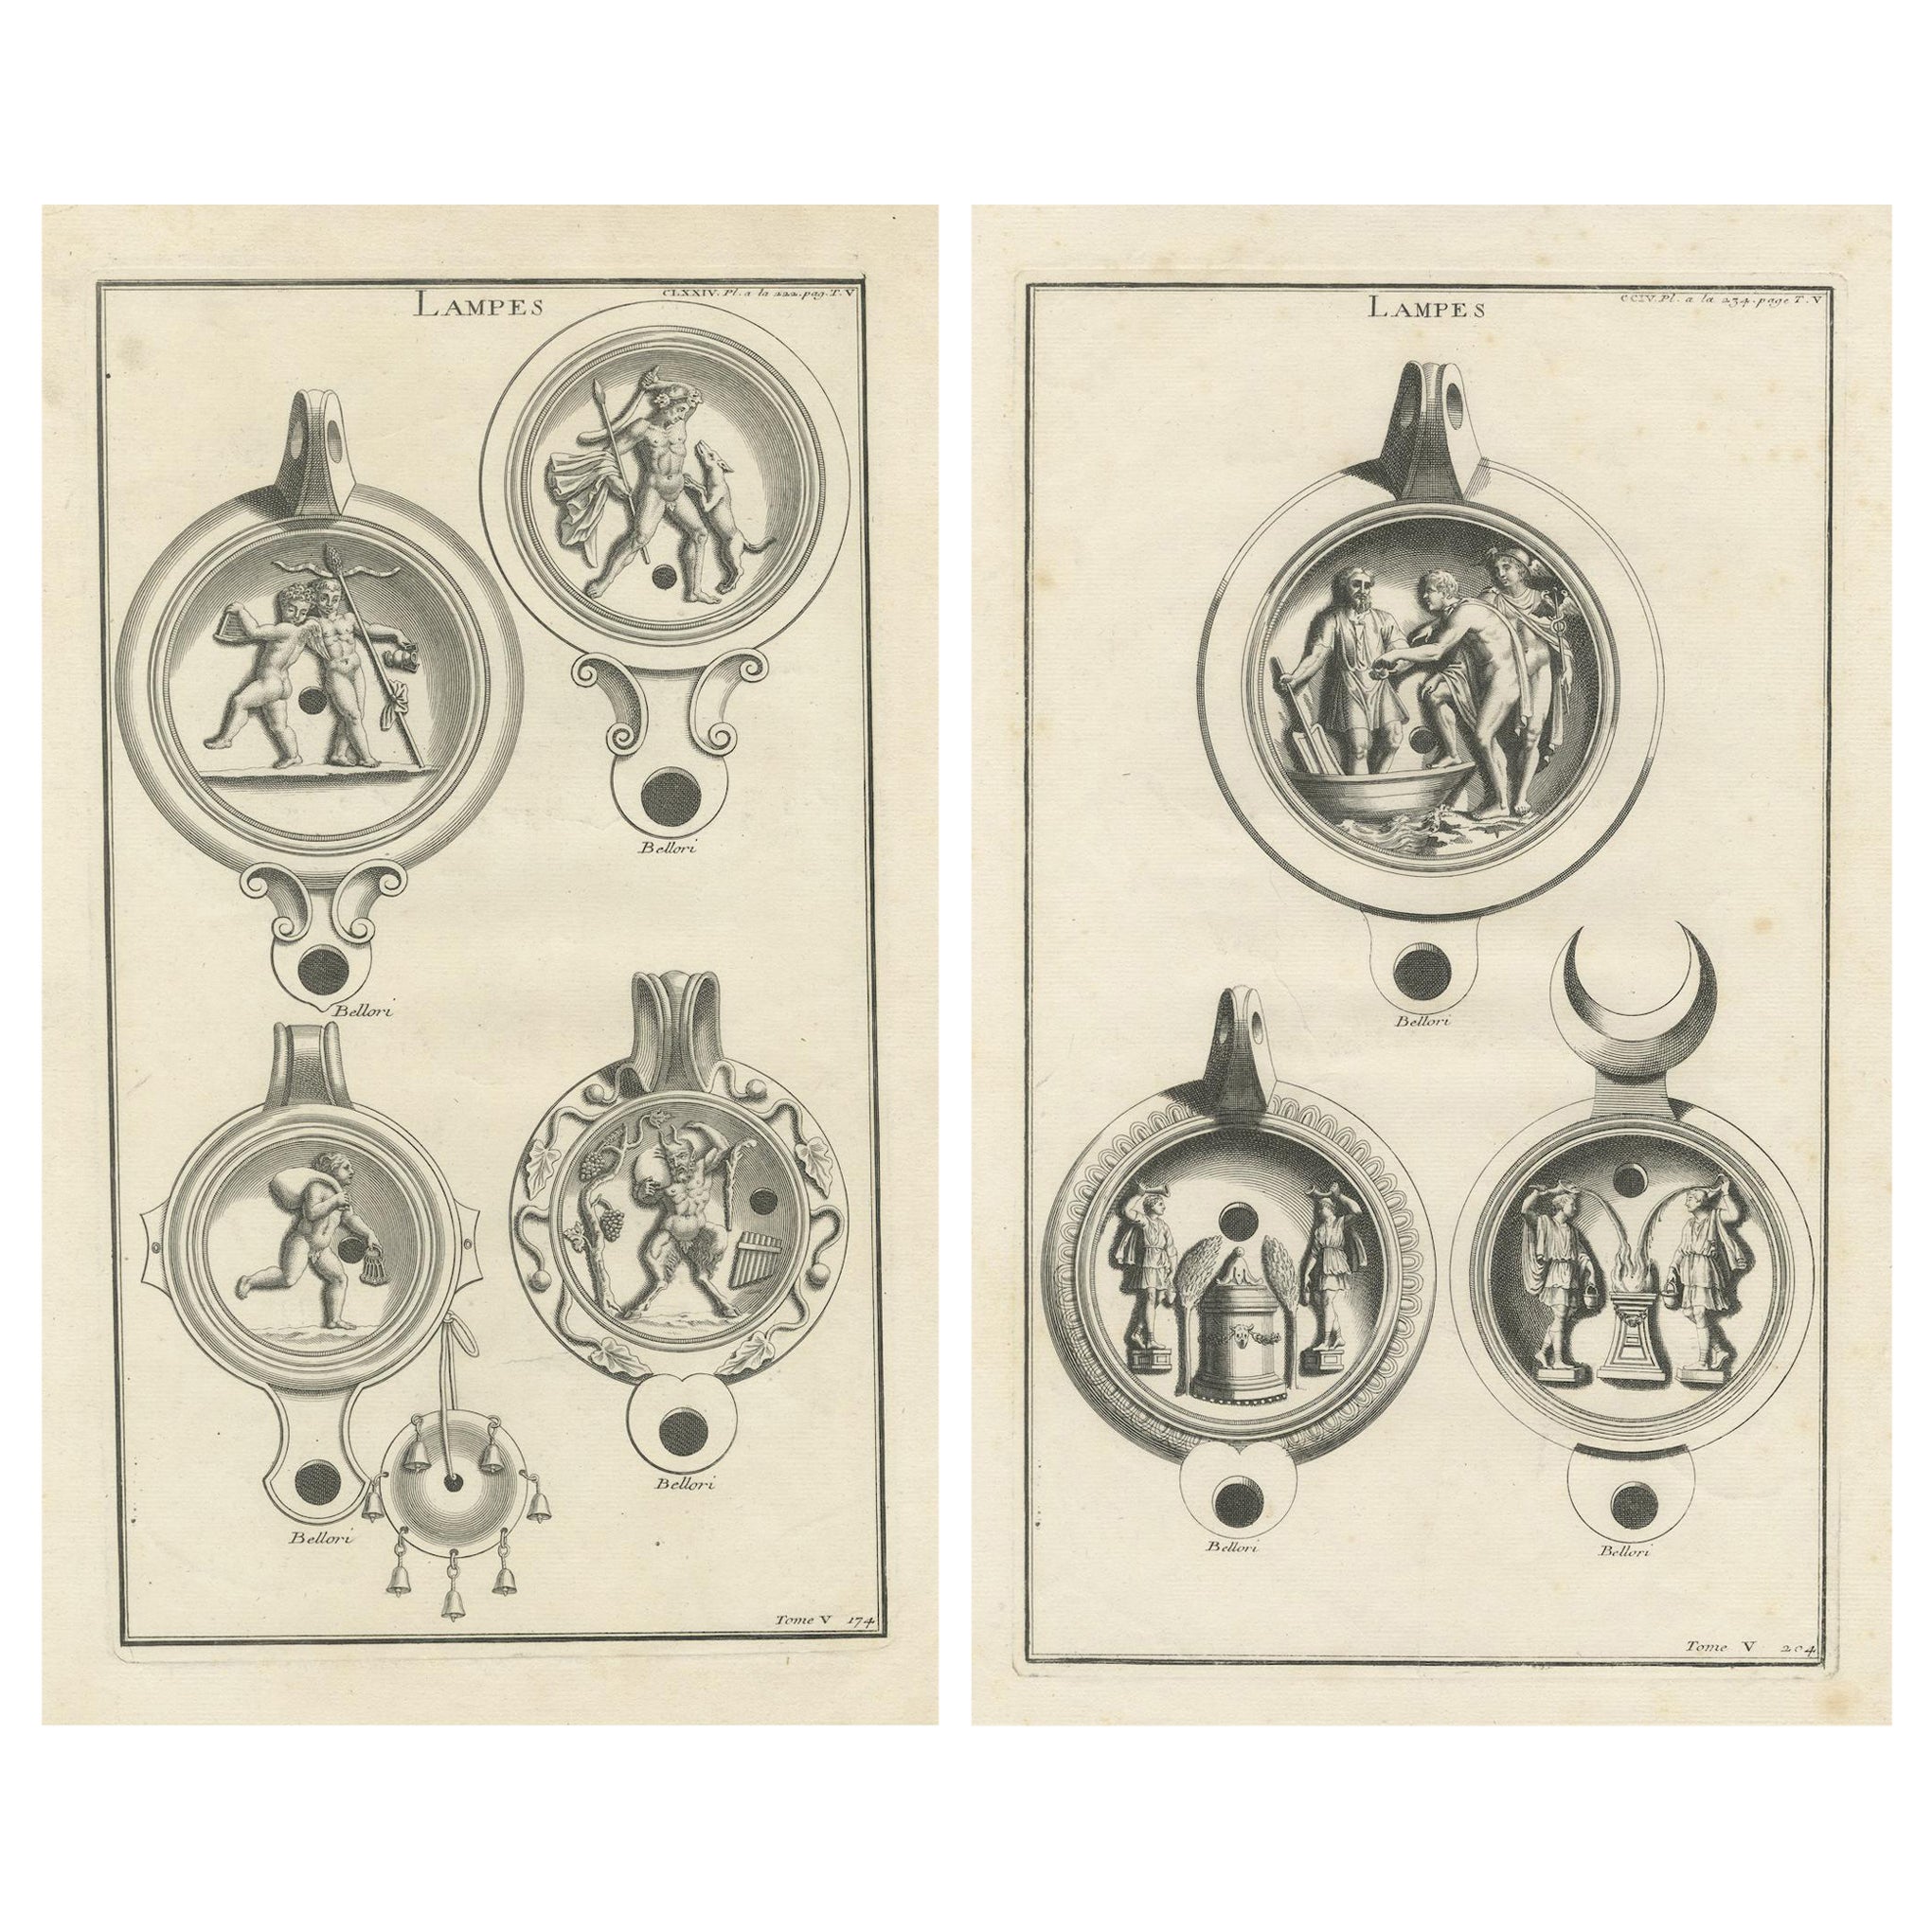 Les lampes anciennes dans l'art : Gravures de Montfaucon du XVIIIe siècle, vers 1722